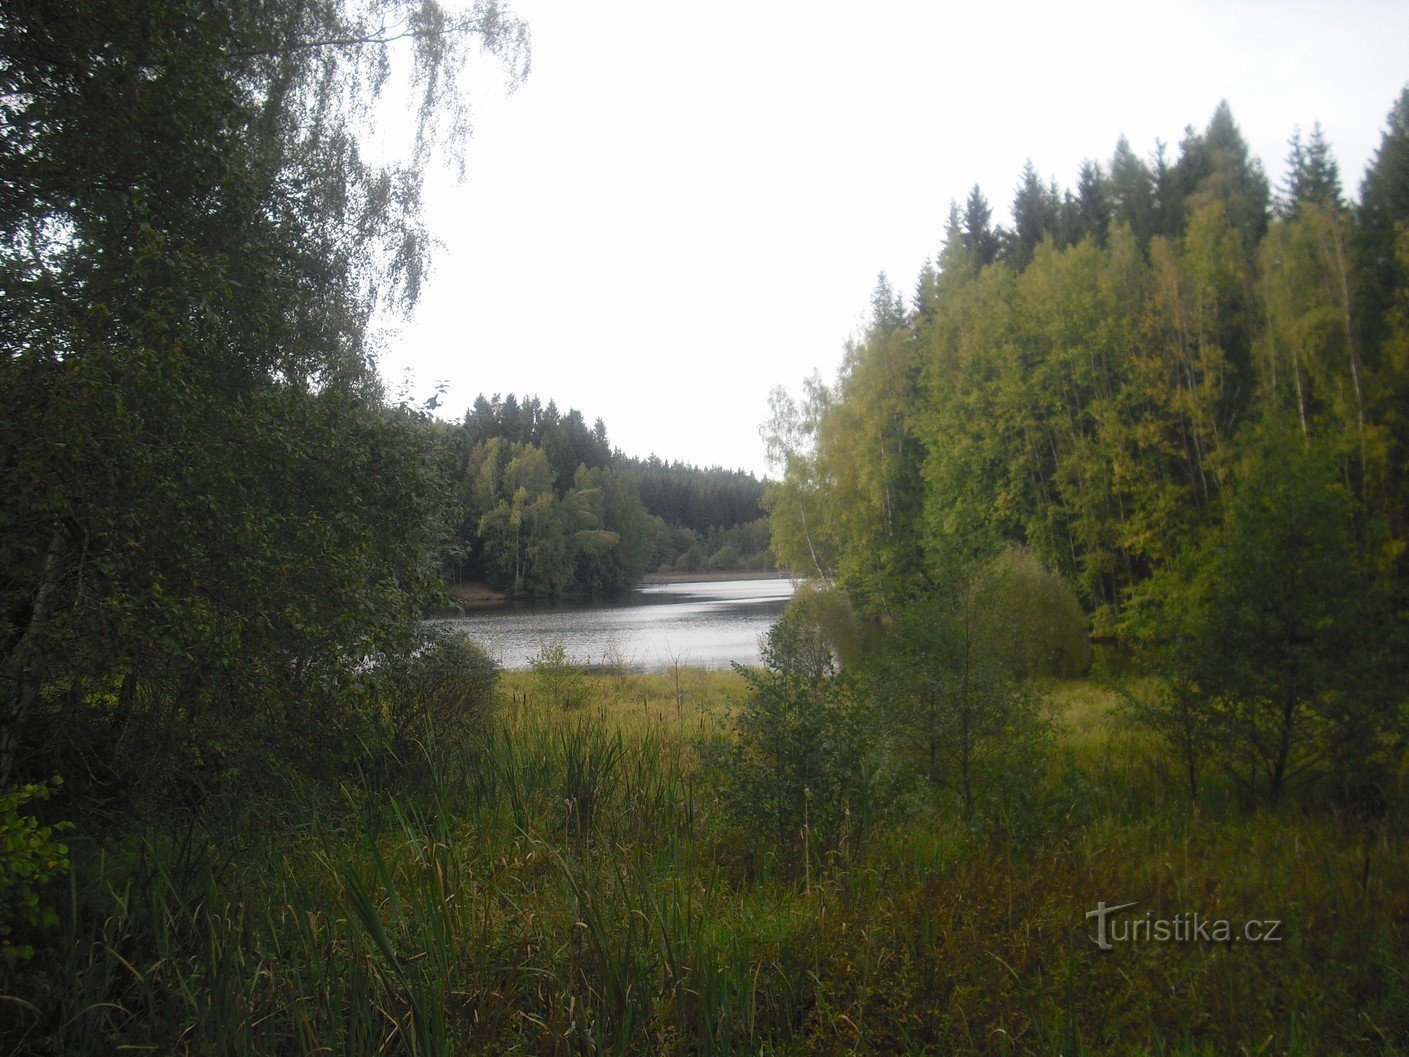 Hồ chứa nước Bílý Halštrov gần Dolní Pasek, một phần của thị trấn Aš